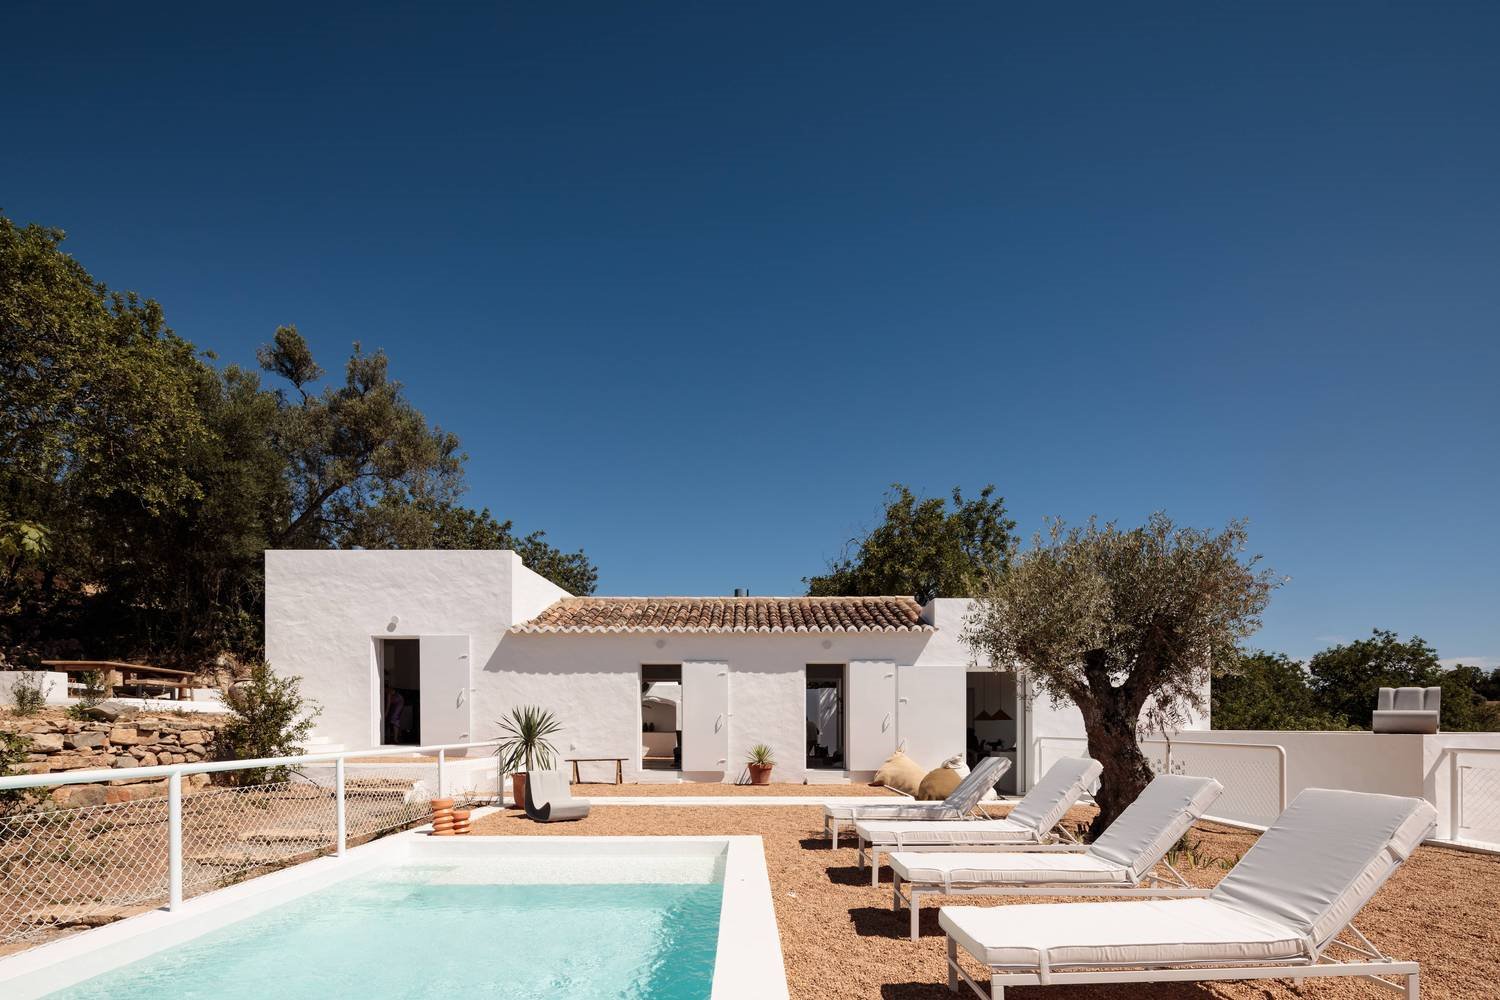 Casa de vacaciones en el algarve en Portugal con fachada e interiores de color blanco piscina con tumbonas